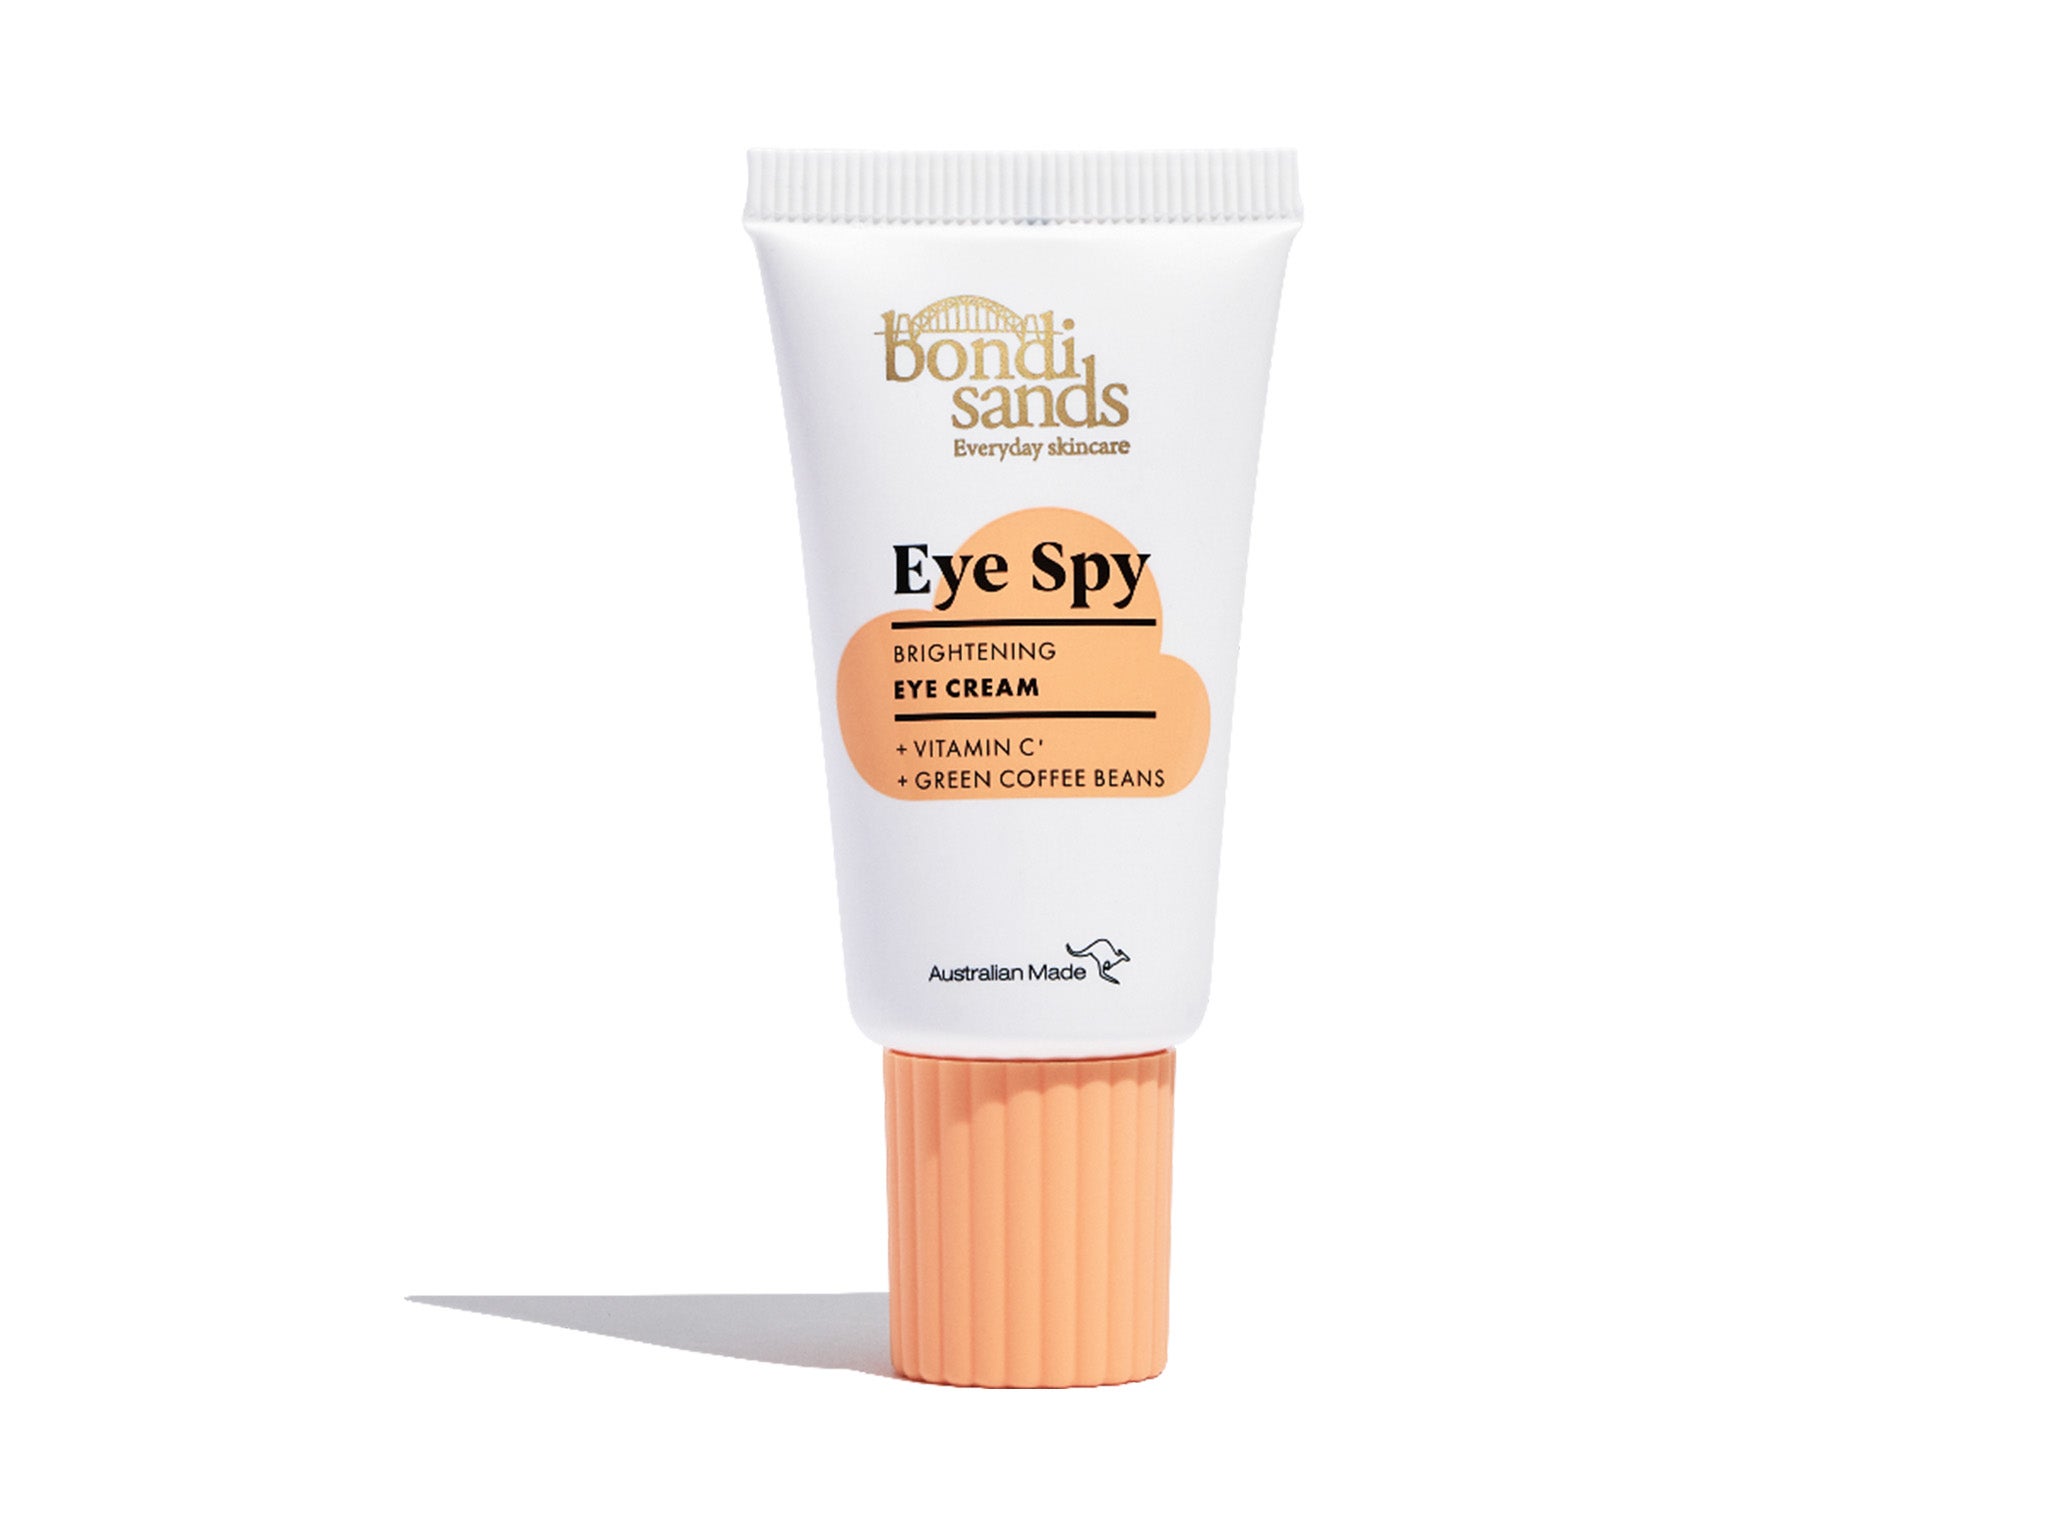 Bondi Sands eye spy vitamin C eye cream